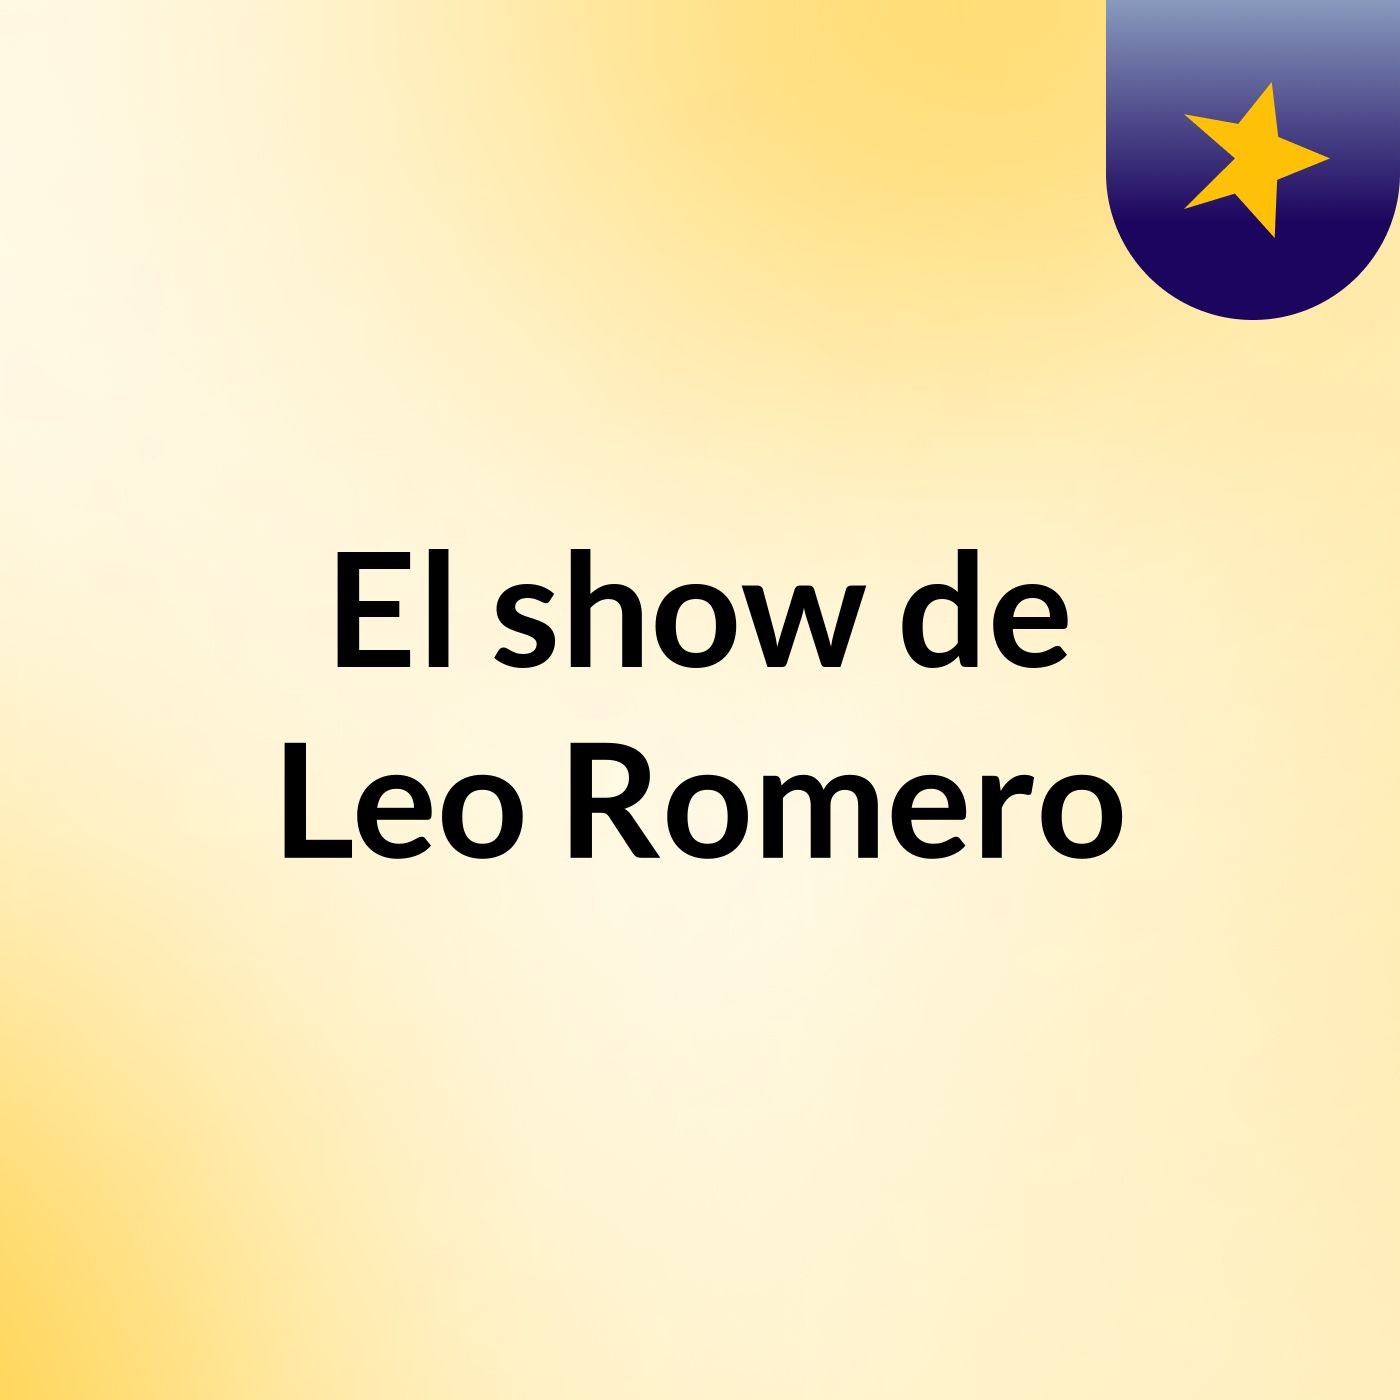 El show de Leo Romero